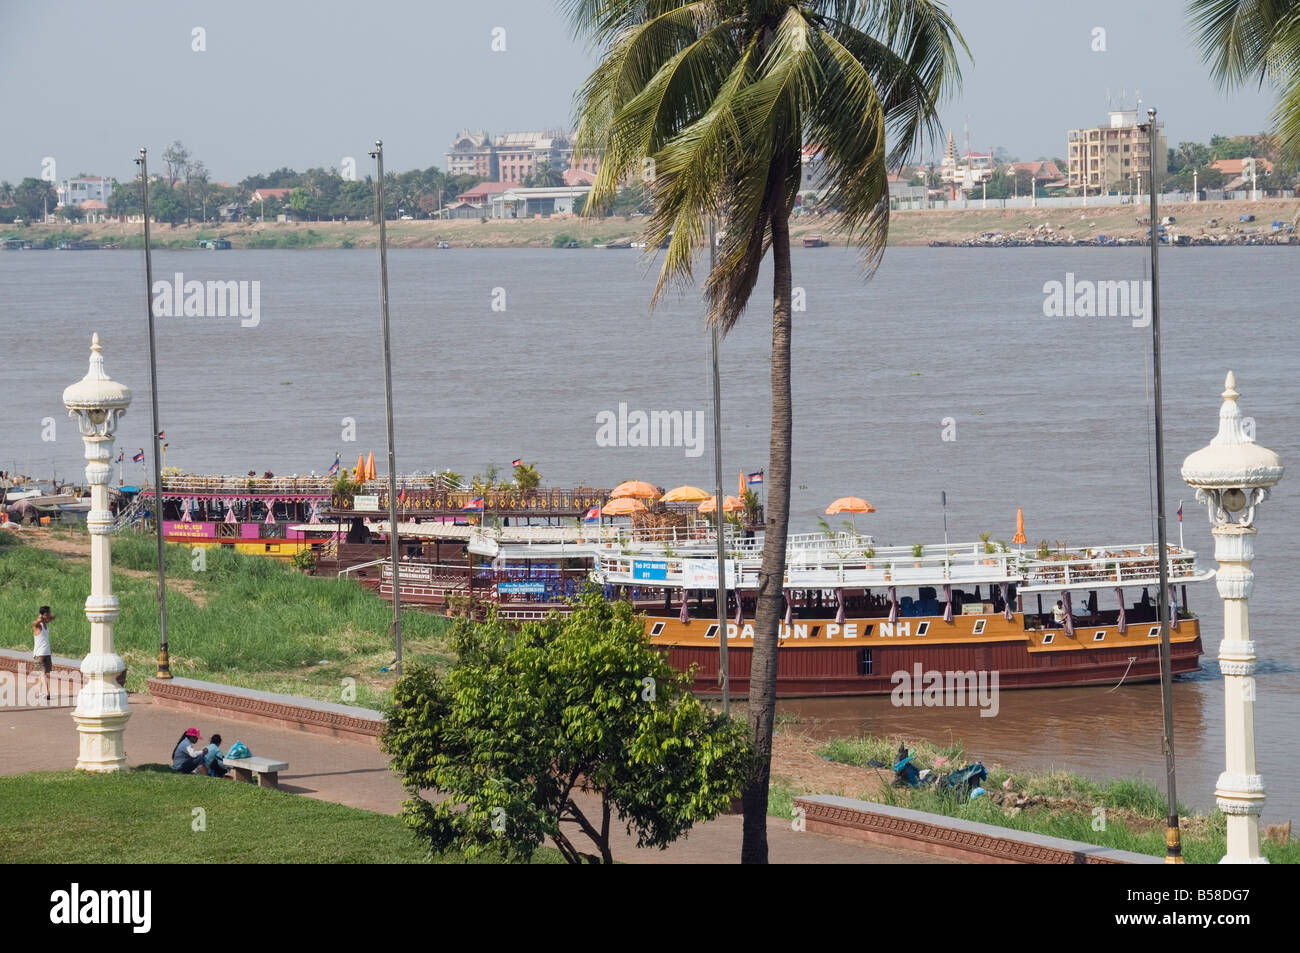 Bateaux de touristes sur la rivière Tonle Sap, Phnom Penh, Cambodge, Indochine, Asie du sud-est Banque D'Images